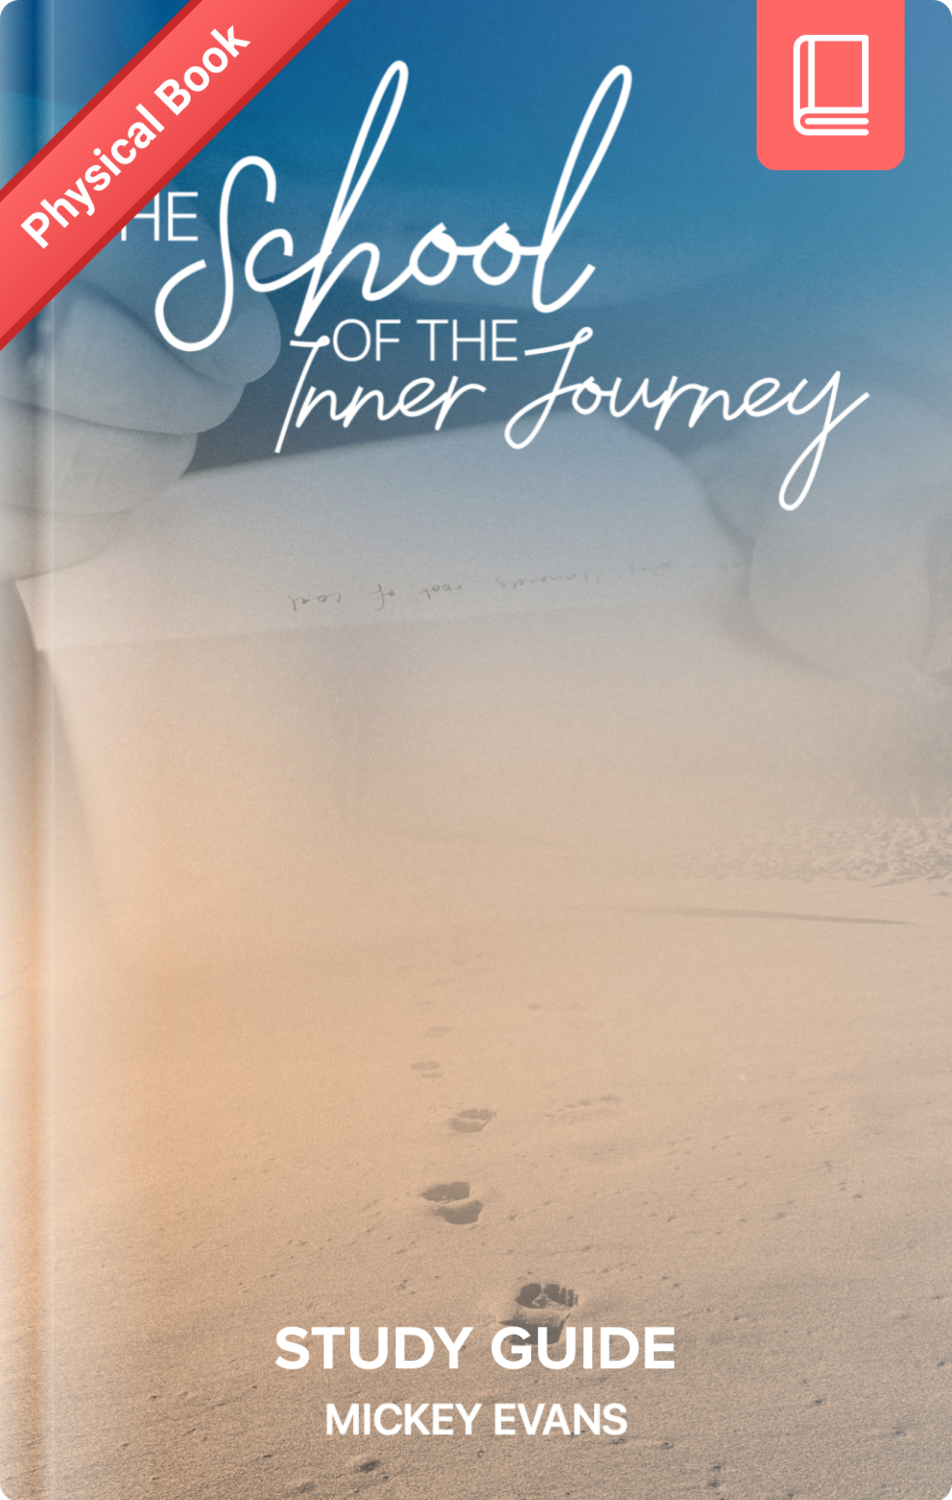 Inner Journey study guide 